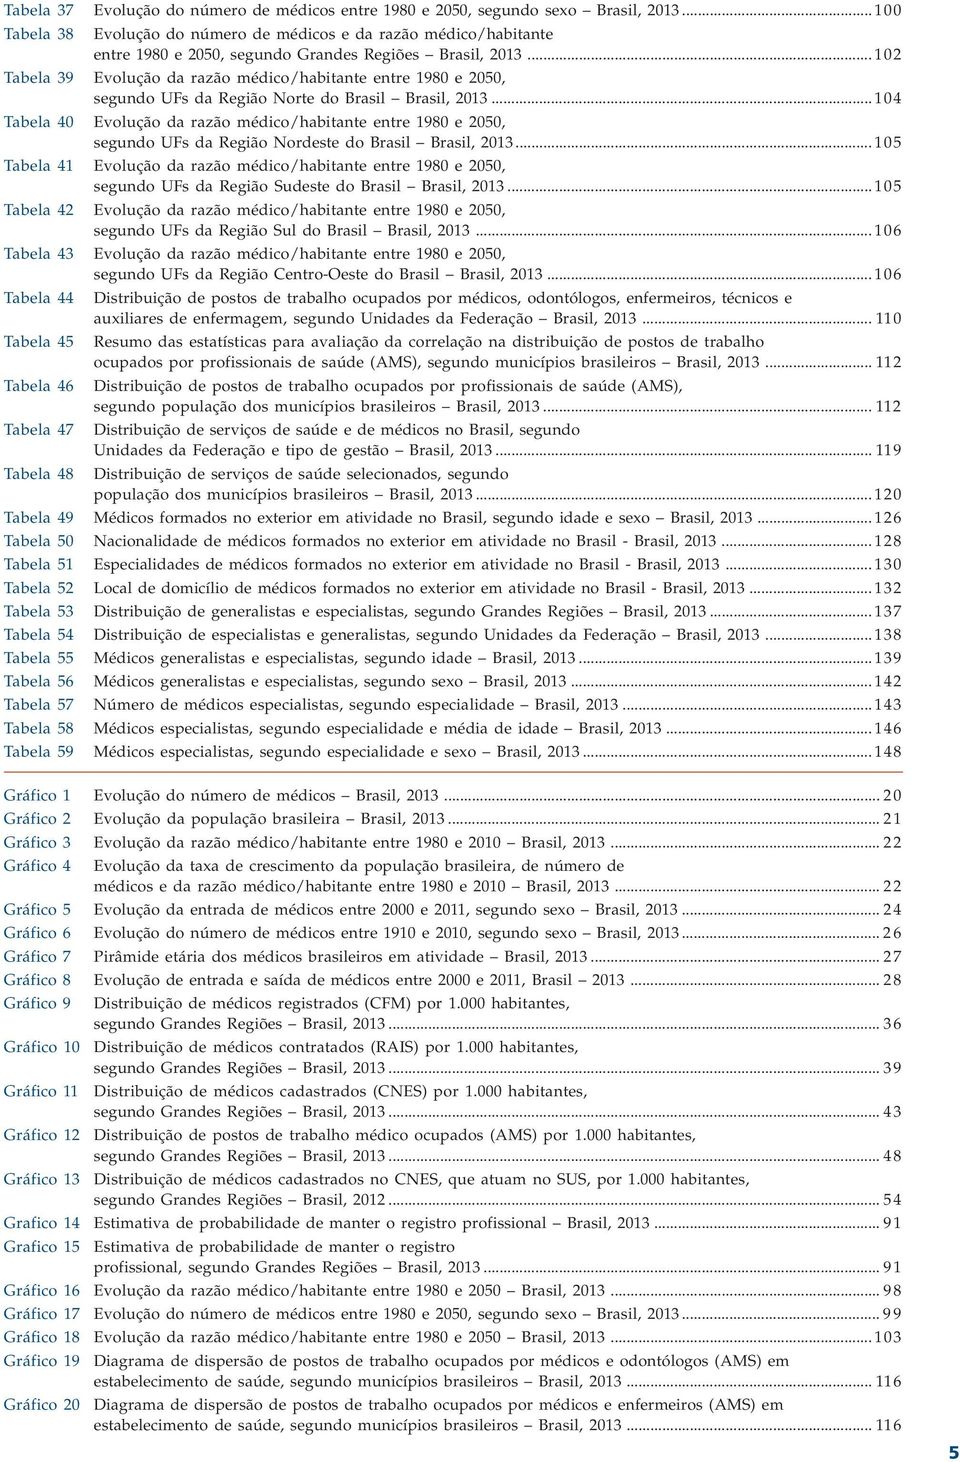 .. 102 Tabela 39 Evolução da razão médico/habitante entre 1980 e 2050, segundo UFs da Região Norte do Brasil Brasil, 2013.